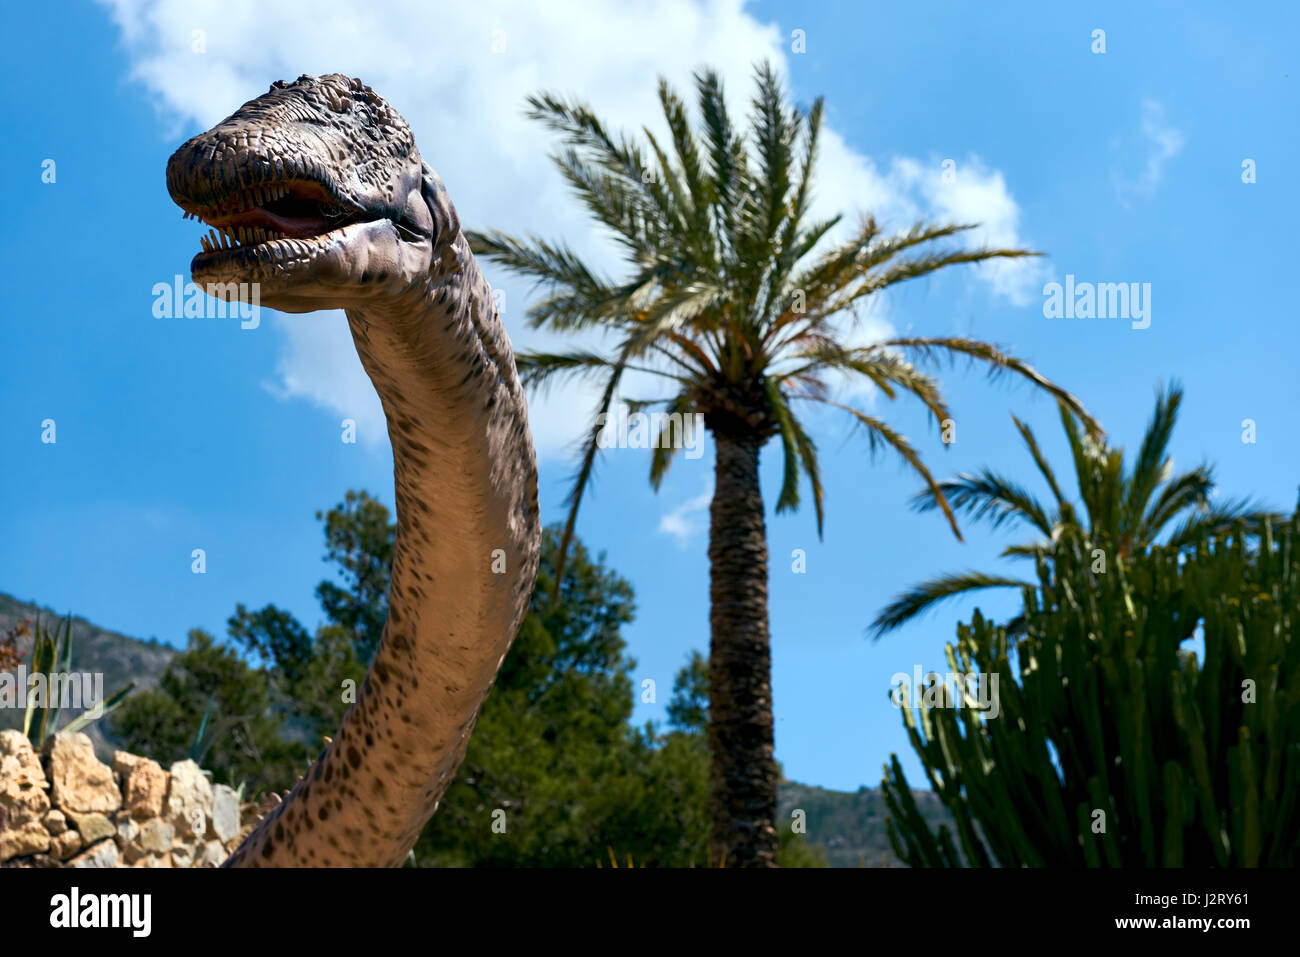 Algar, Spanien - 8. April 2017: Realistisches Modell eines Dinosauriers Amphicoelias im Dino Park von Algar. Es ist eine einzigartige Unterhaltung und Bildung Park. Stockfoto